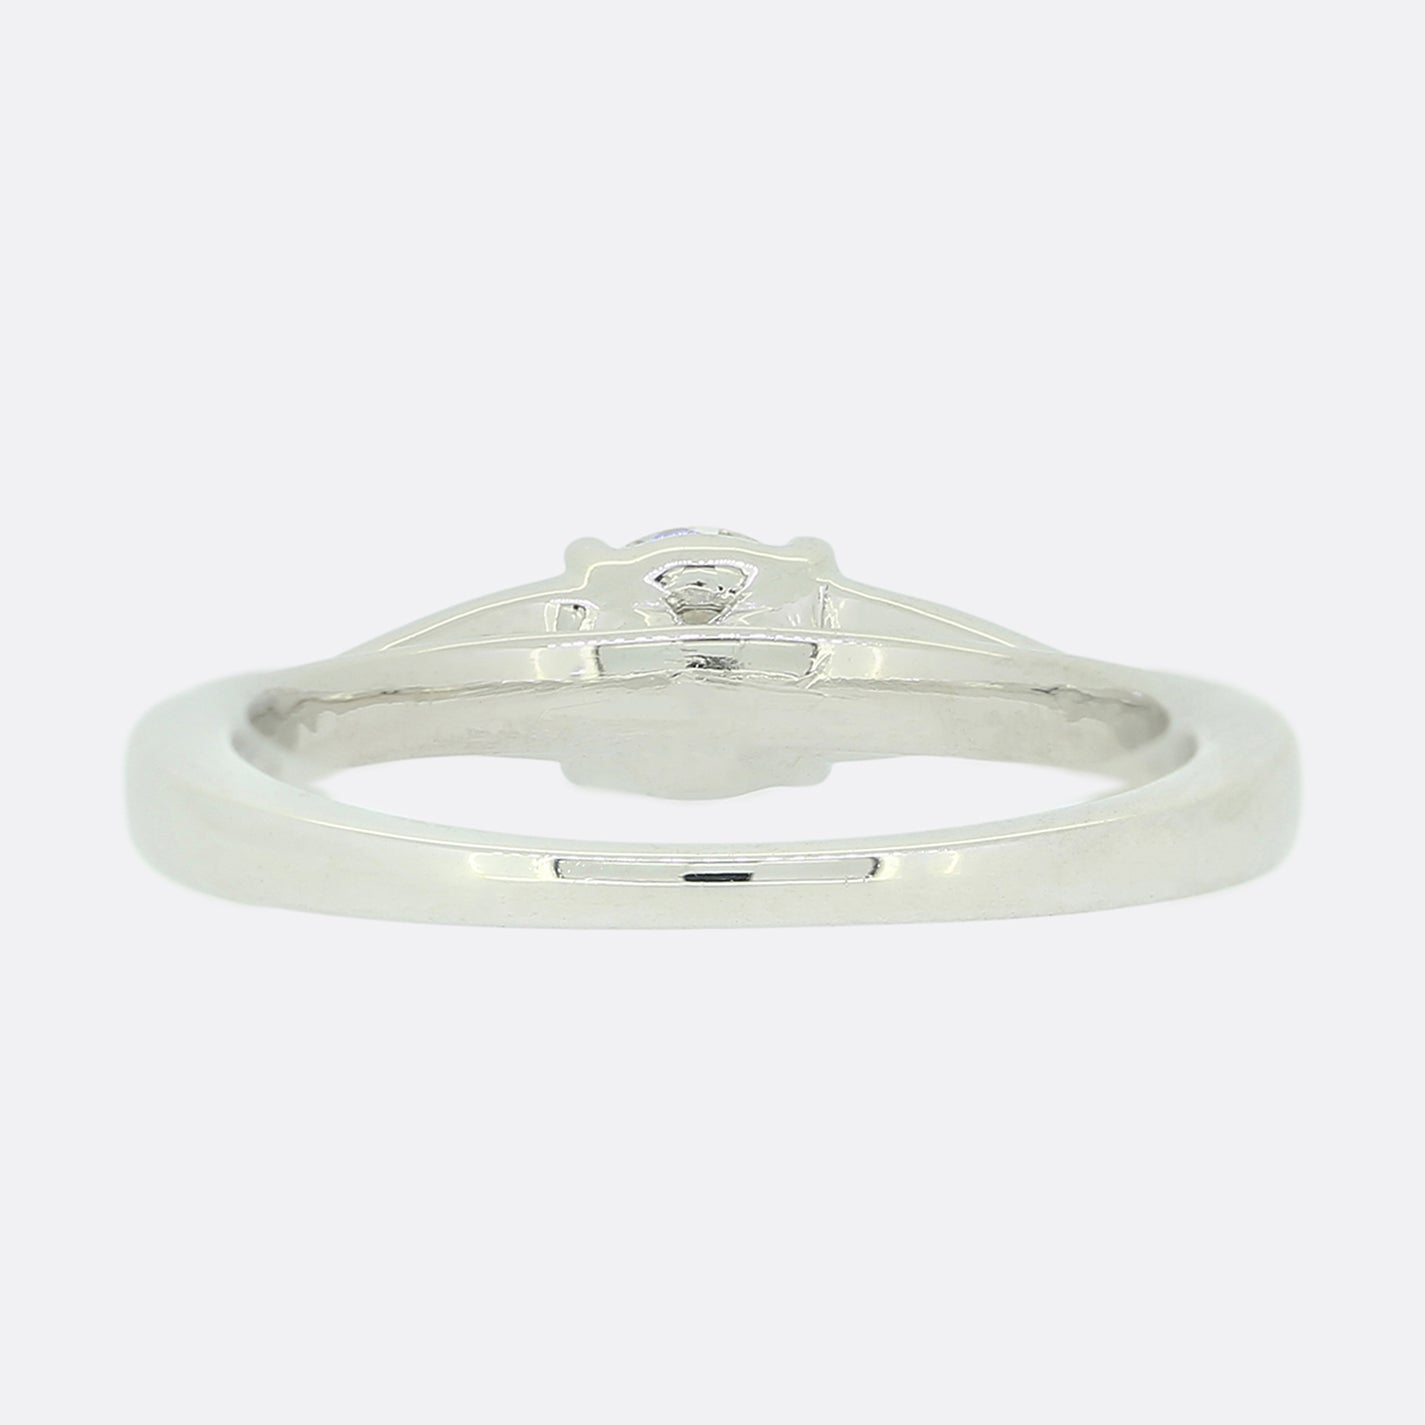 0.40 Carat Diamond Solitaire Ring